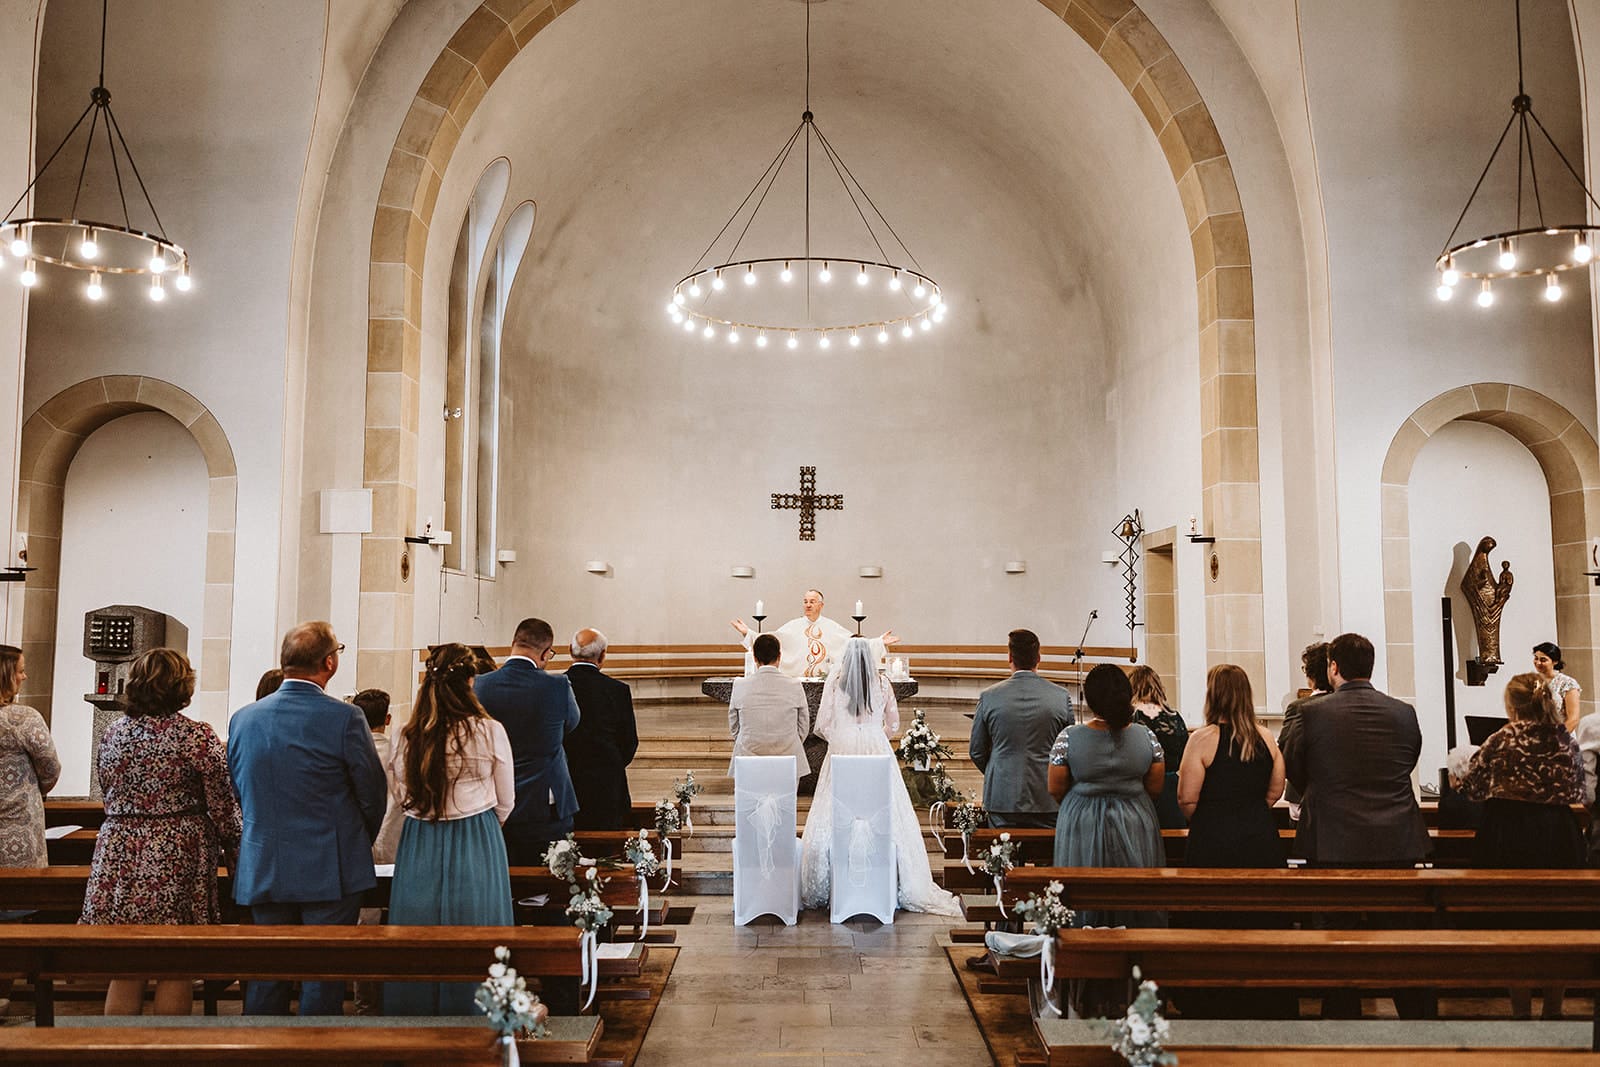 St. Marien Witten Hochzeitsfotograf - Weitwinkel-Aufnahme von Hochzeitspaar in der Kirche und Hochzeitsgesellschaft